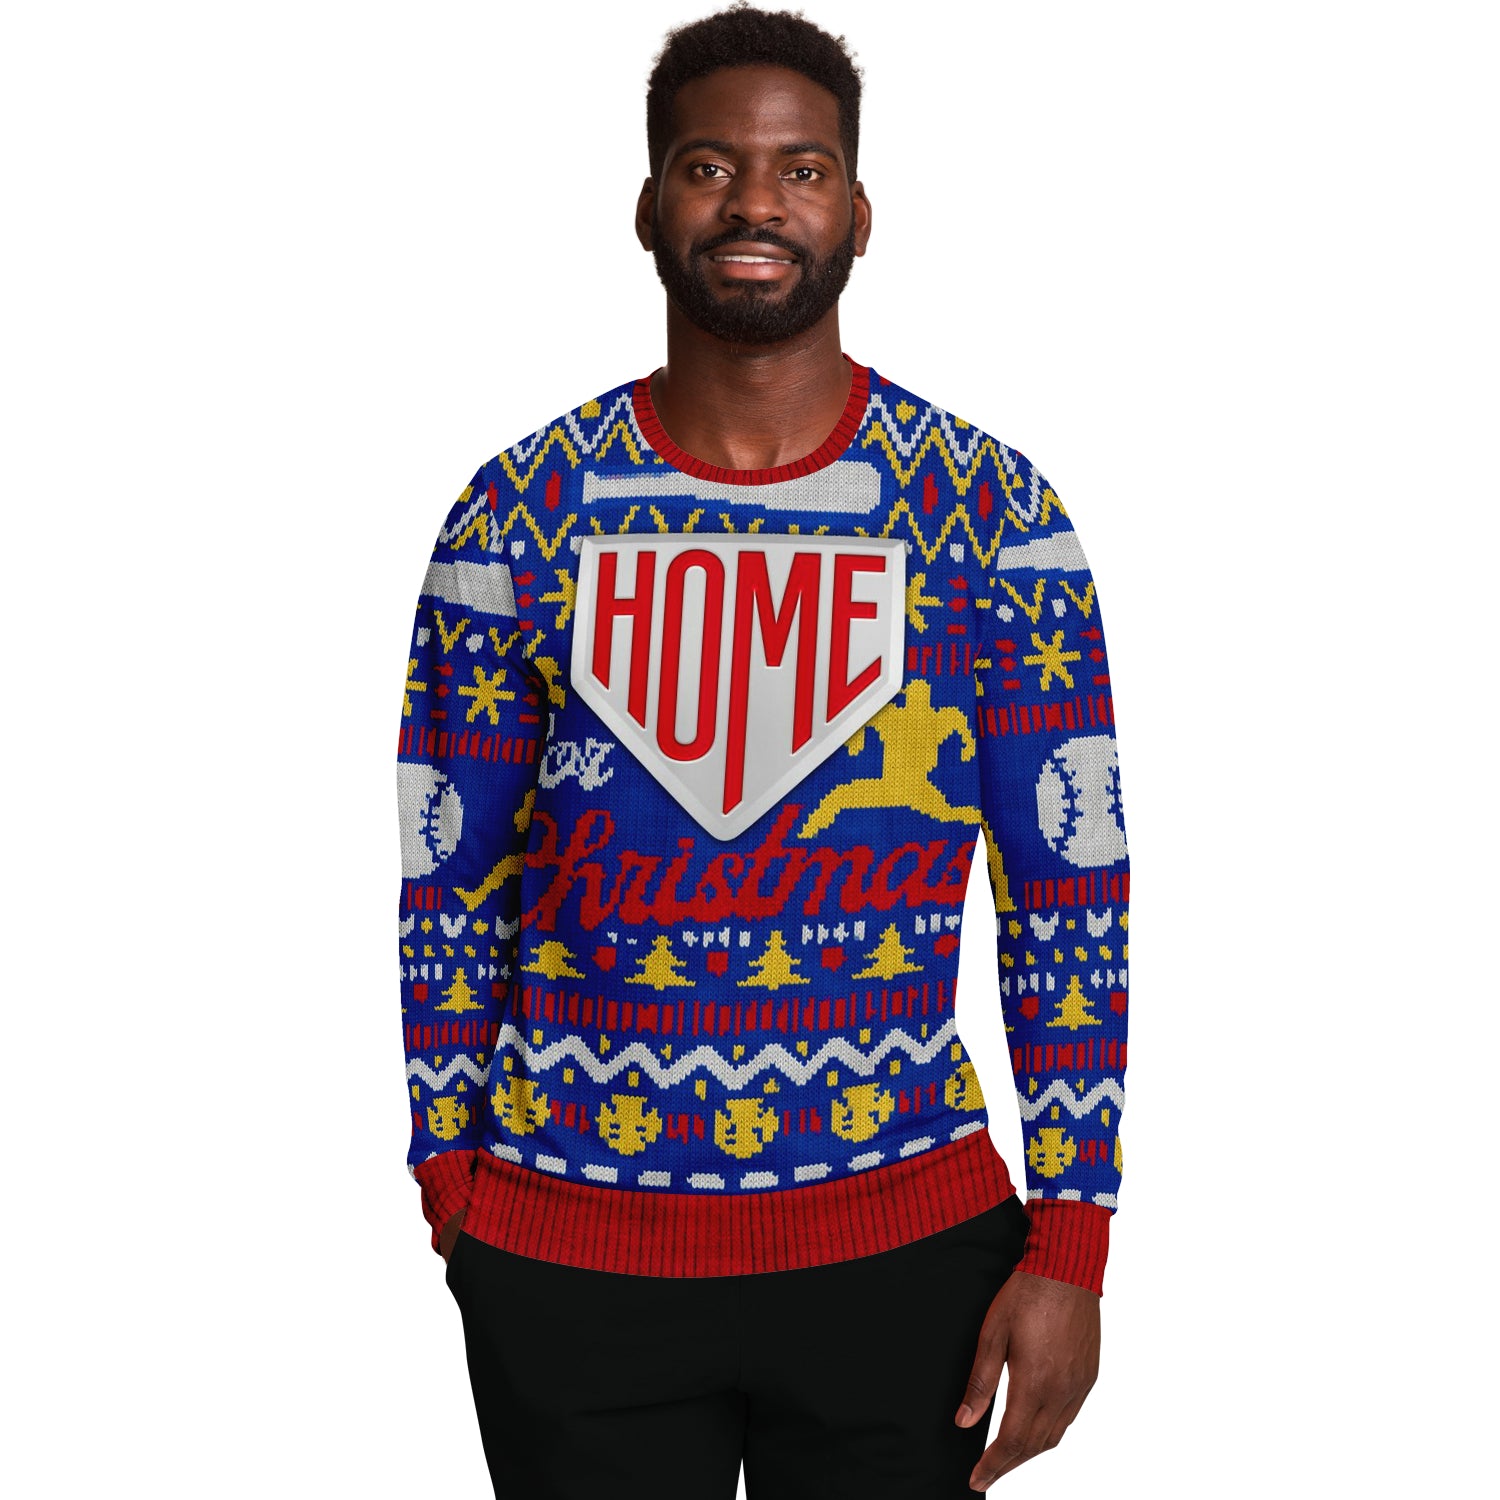 Home For Christmas Baseball Sweatshirt | Unisex Ugly Christmas Sweater, Xmas Sweater, Holiday Sweater, Festive Sweater, Funny Sweater, Funny Party Shirt